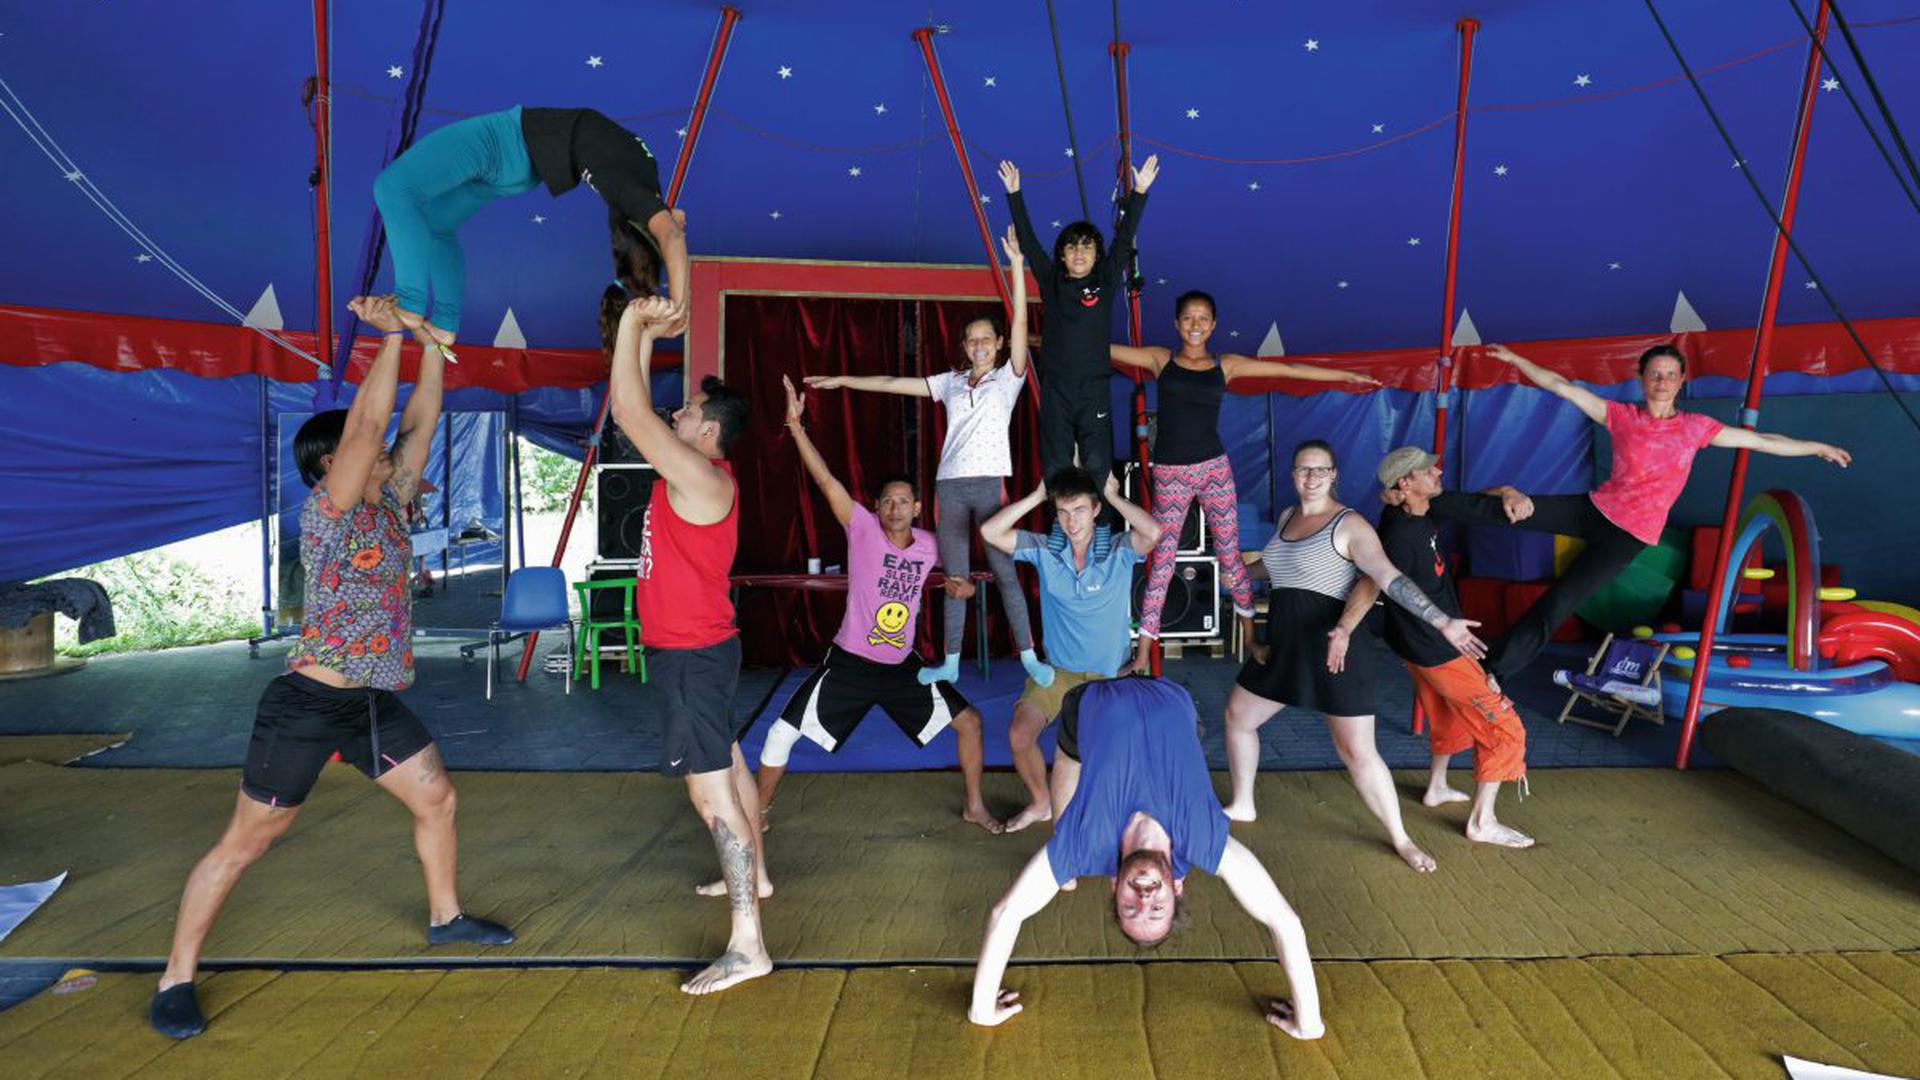 Treffpunkt zweier Kulturen ist das Zelt des Zirkus Maccaroni im Otto-Dullenkopf-Park. Für das Projekt „Circus for global change“ erarbeiten Artisten aus Deutschland und Nicaragua eine gemeinsame Show.